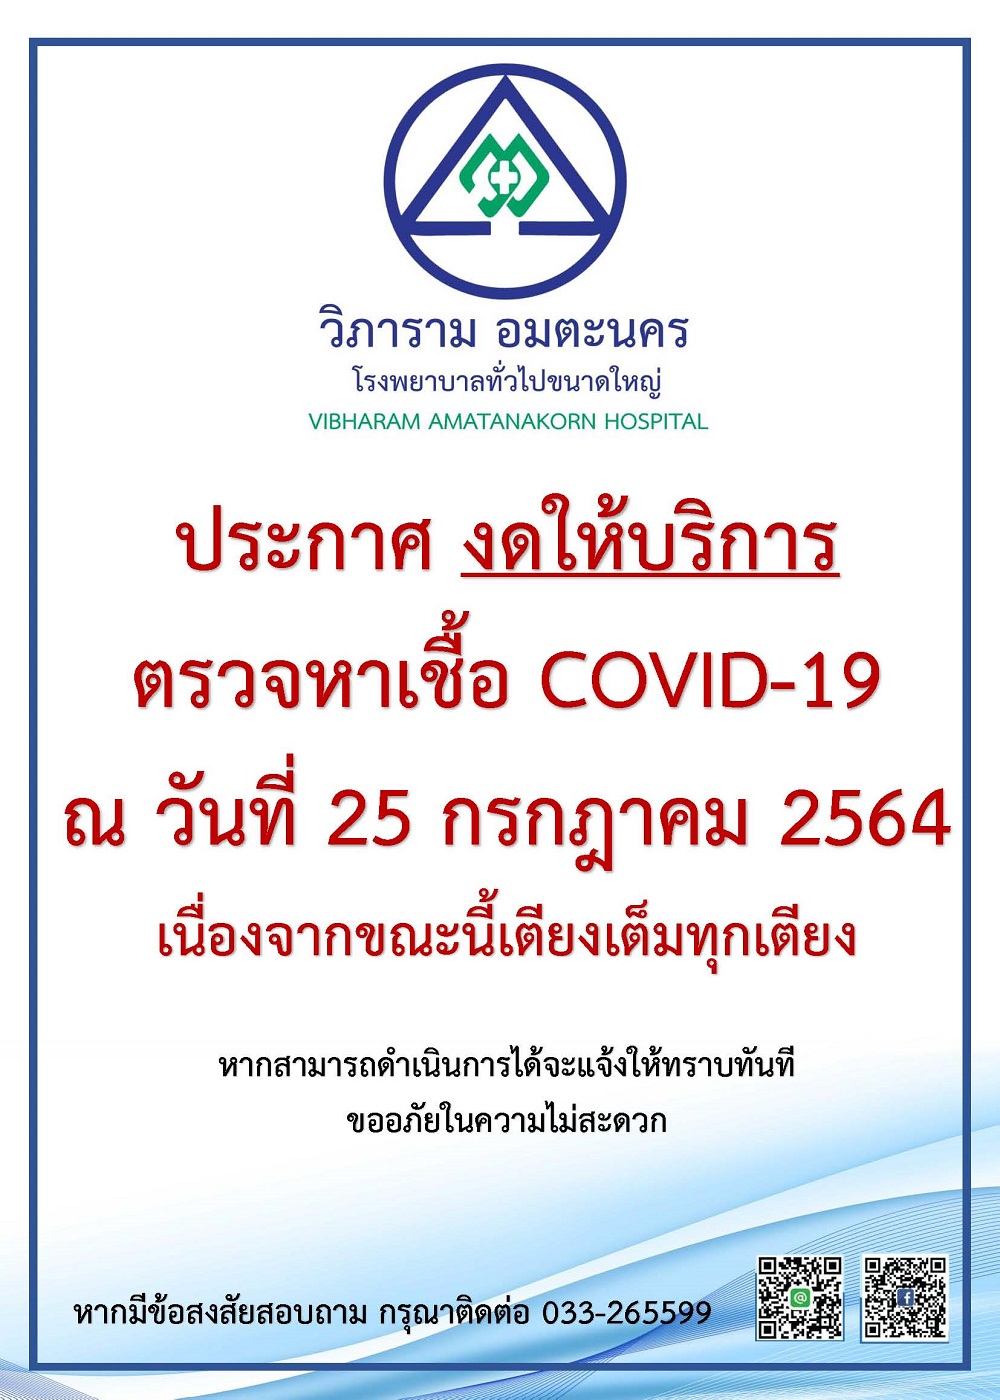 ประกาศ งดให้บริการตรวจหาเชื้อ COVID-19 ณ วันที่ 25 กรกฎาคม 2564